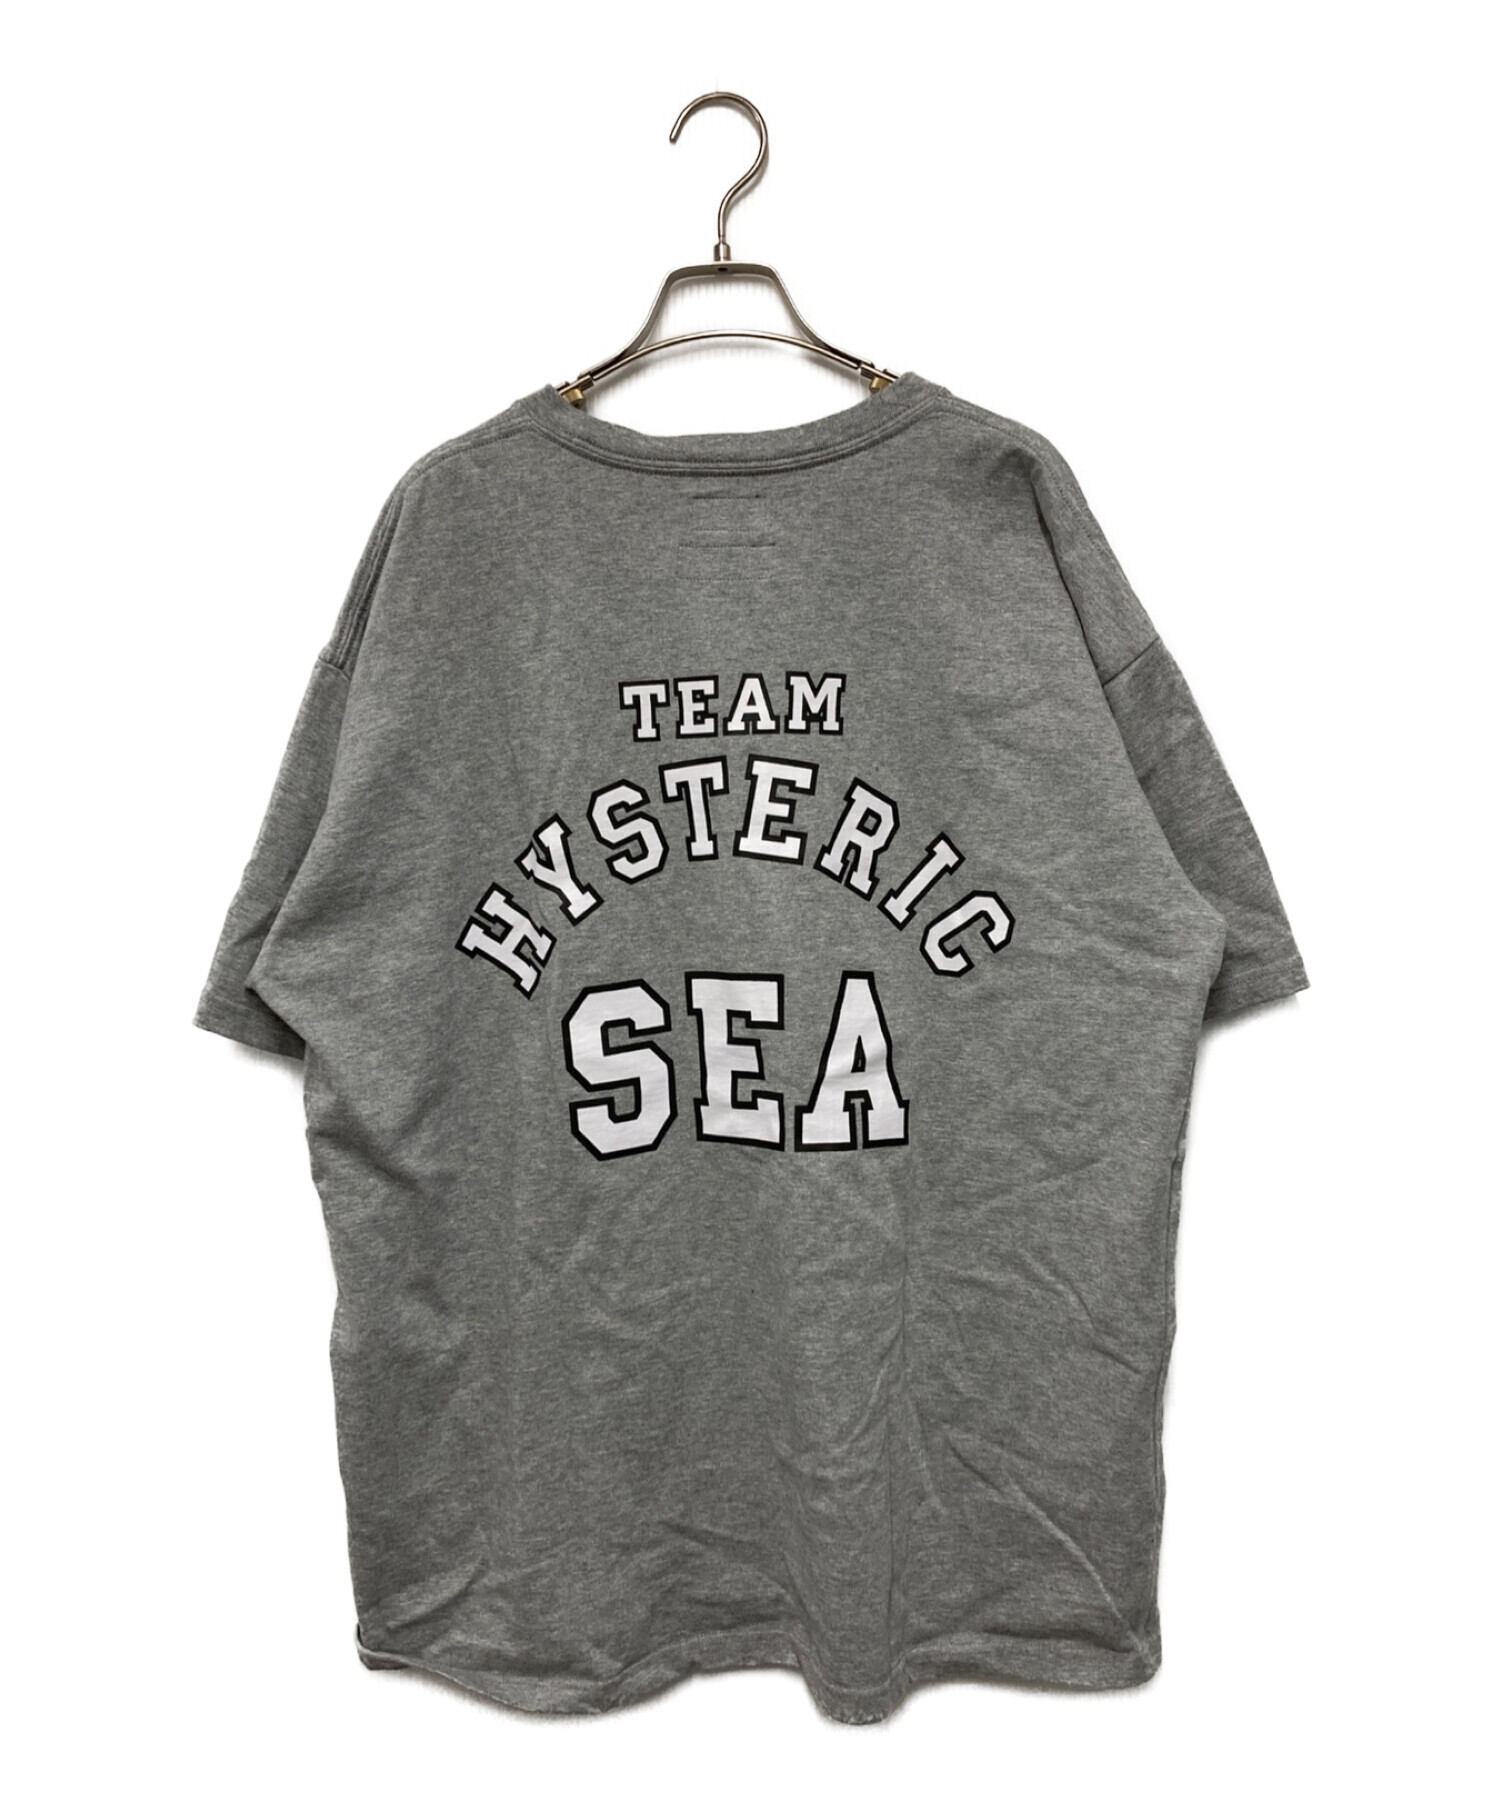 Hysteric Glamour (ヒステリックグラマー) WIND AND SEA (ウィンダンシー) コラボプリントTシャツ グレー サイズ:XL